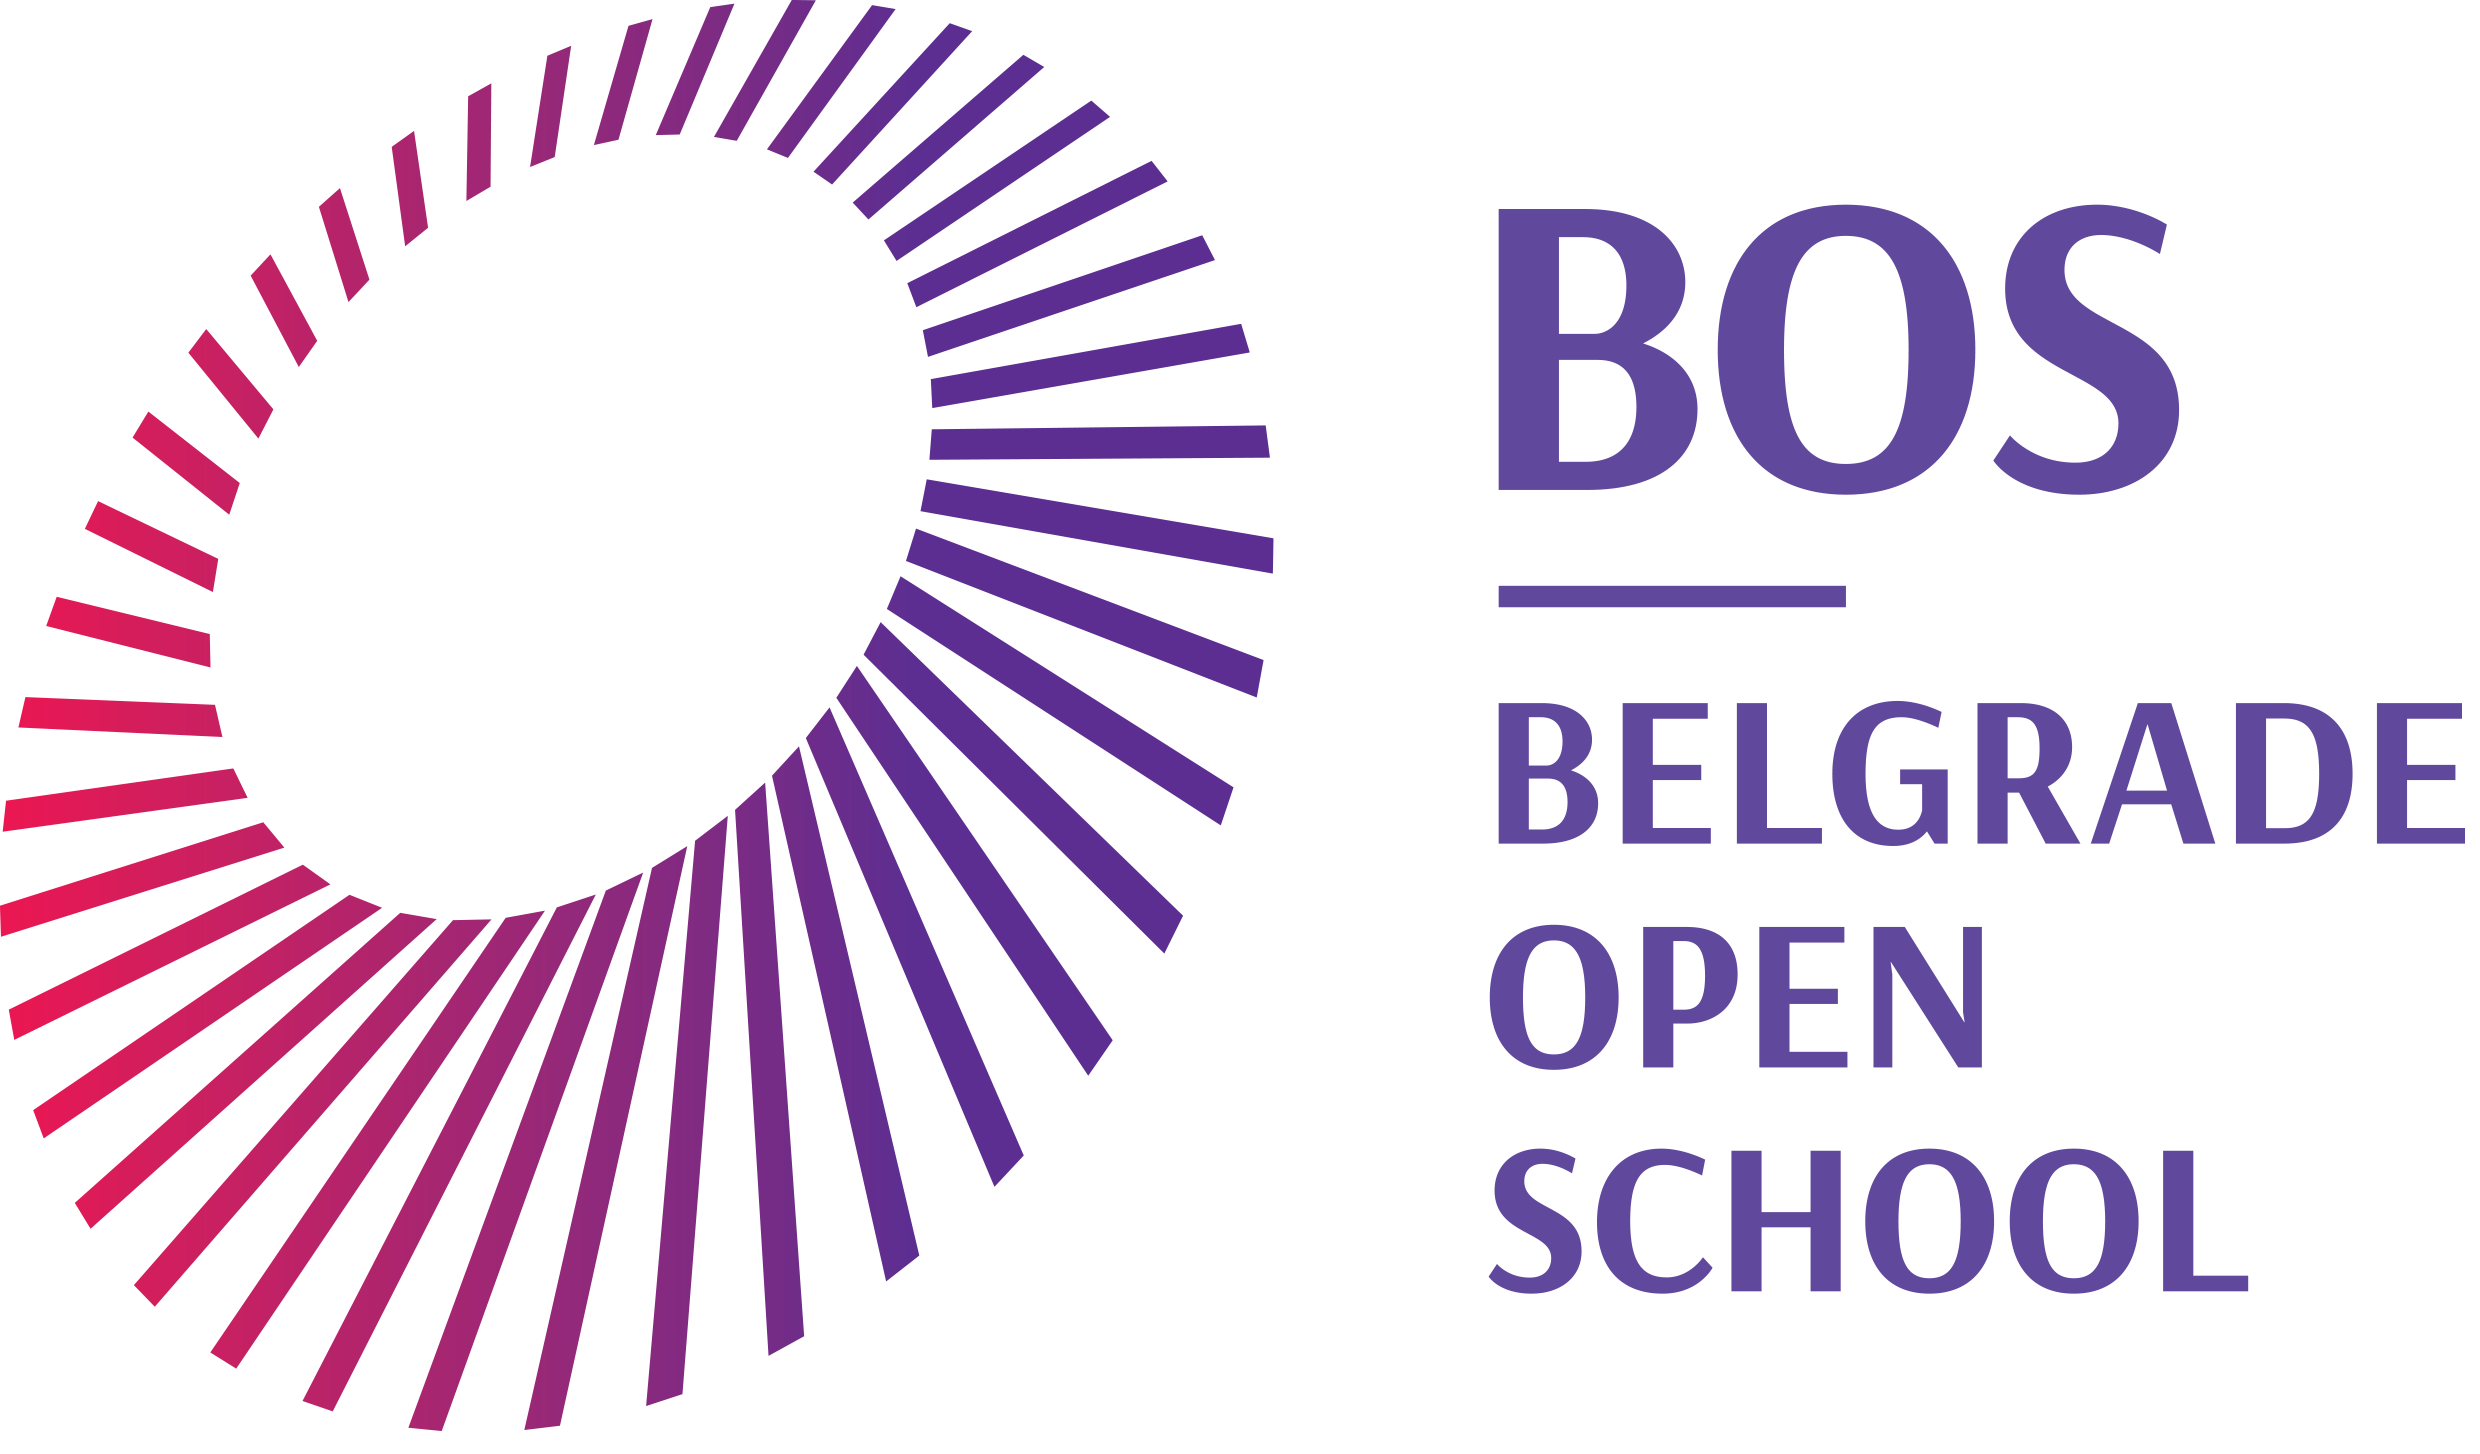 Belgrade Open School